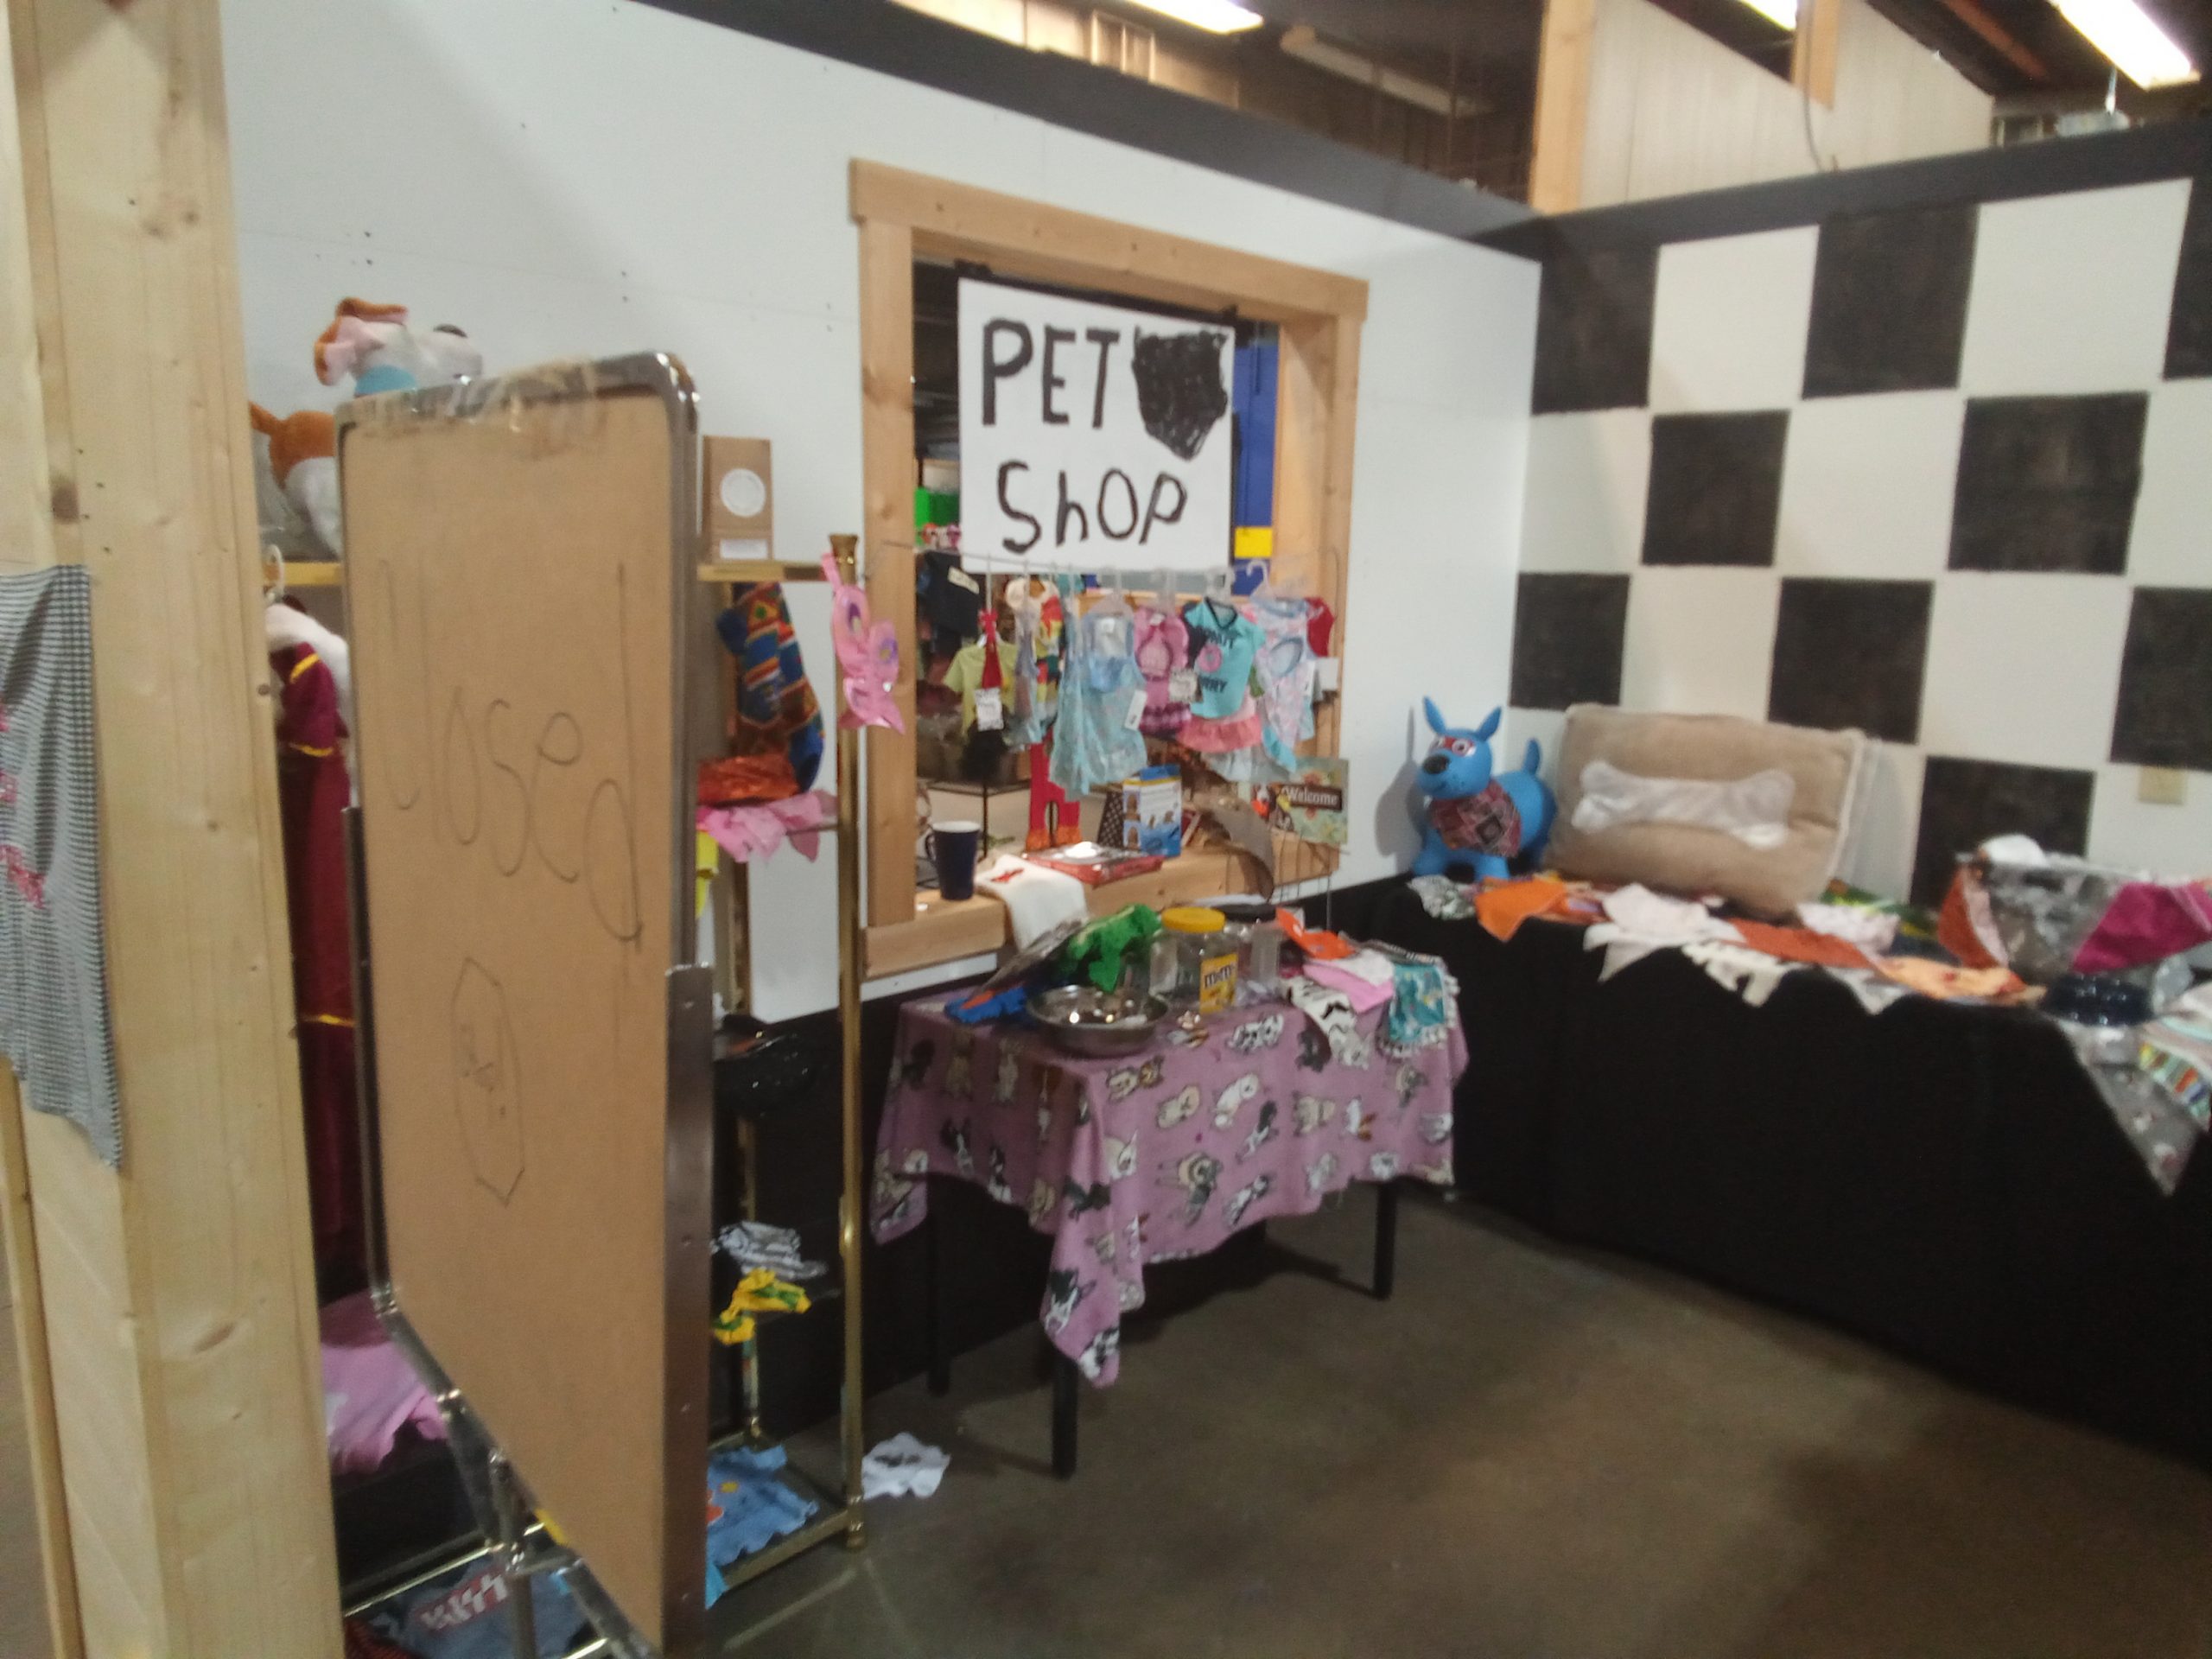 The Pet Shop – P52